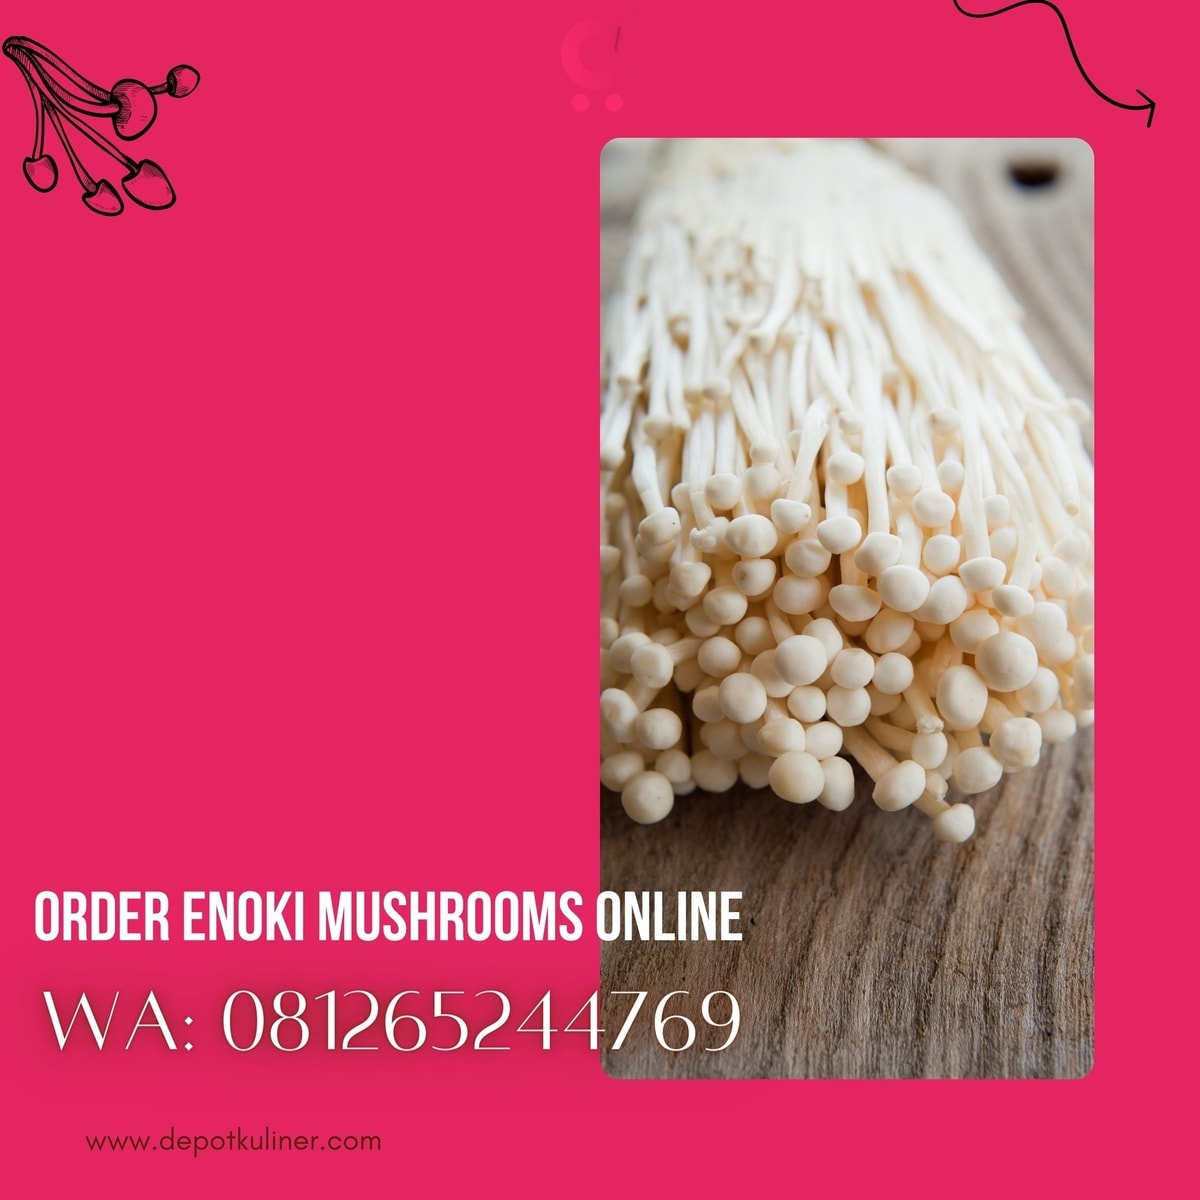 Order Enoki Mushrooms Online HARGA TERBAIK, (0812-6524-4769)